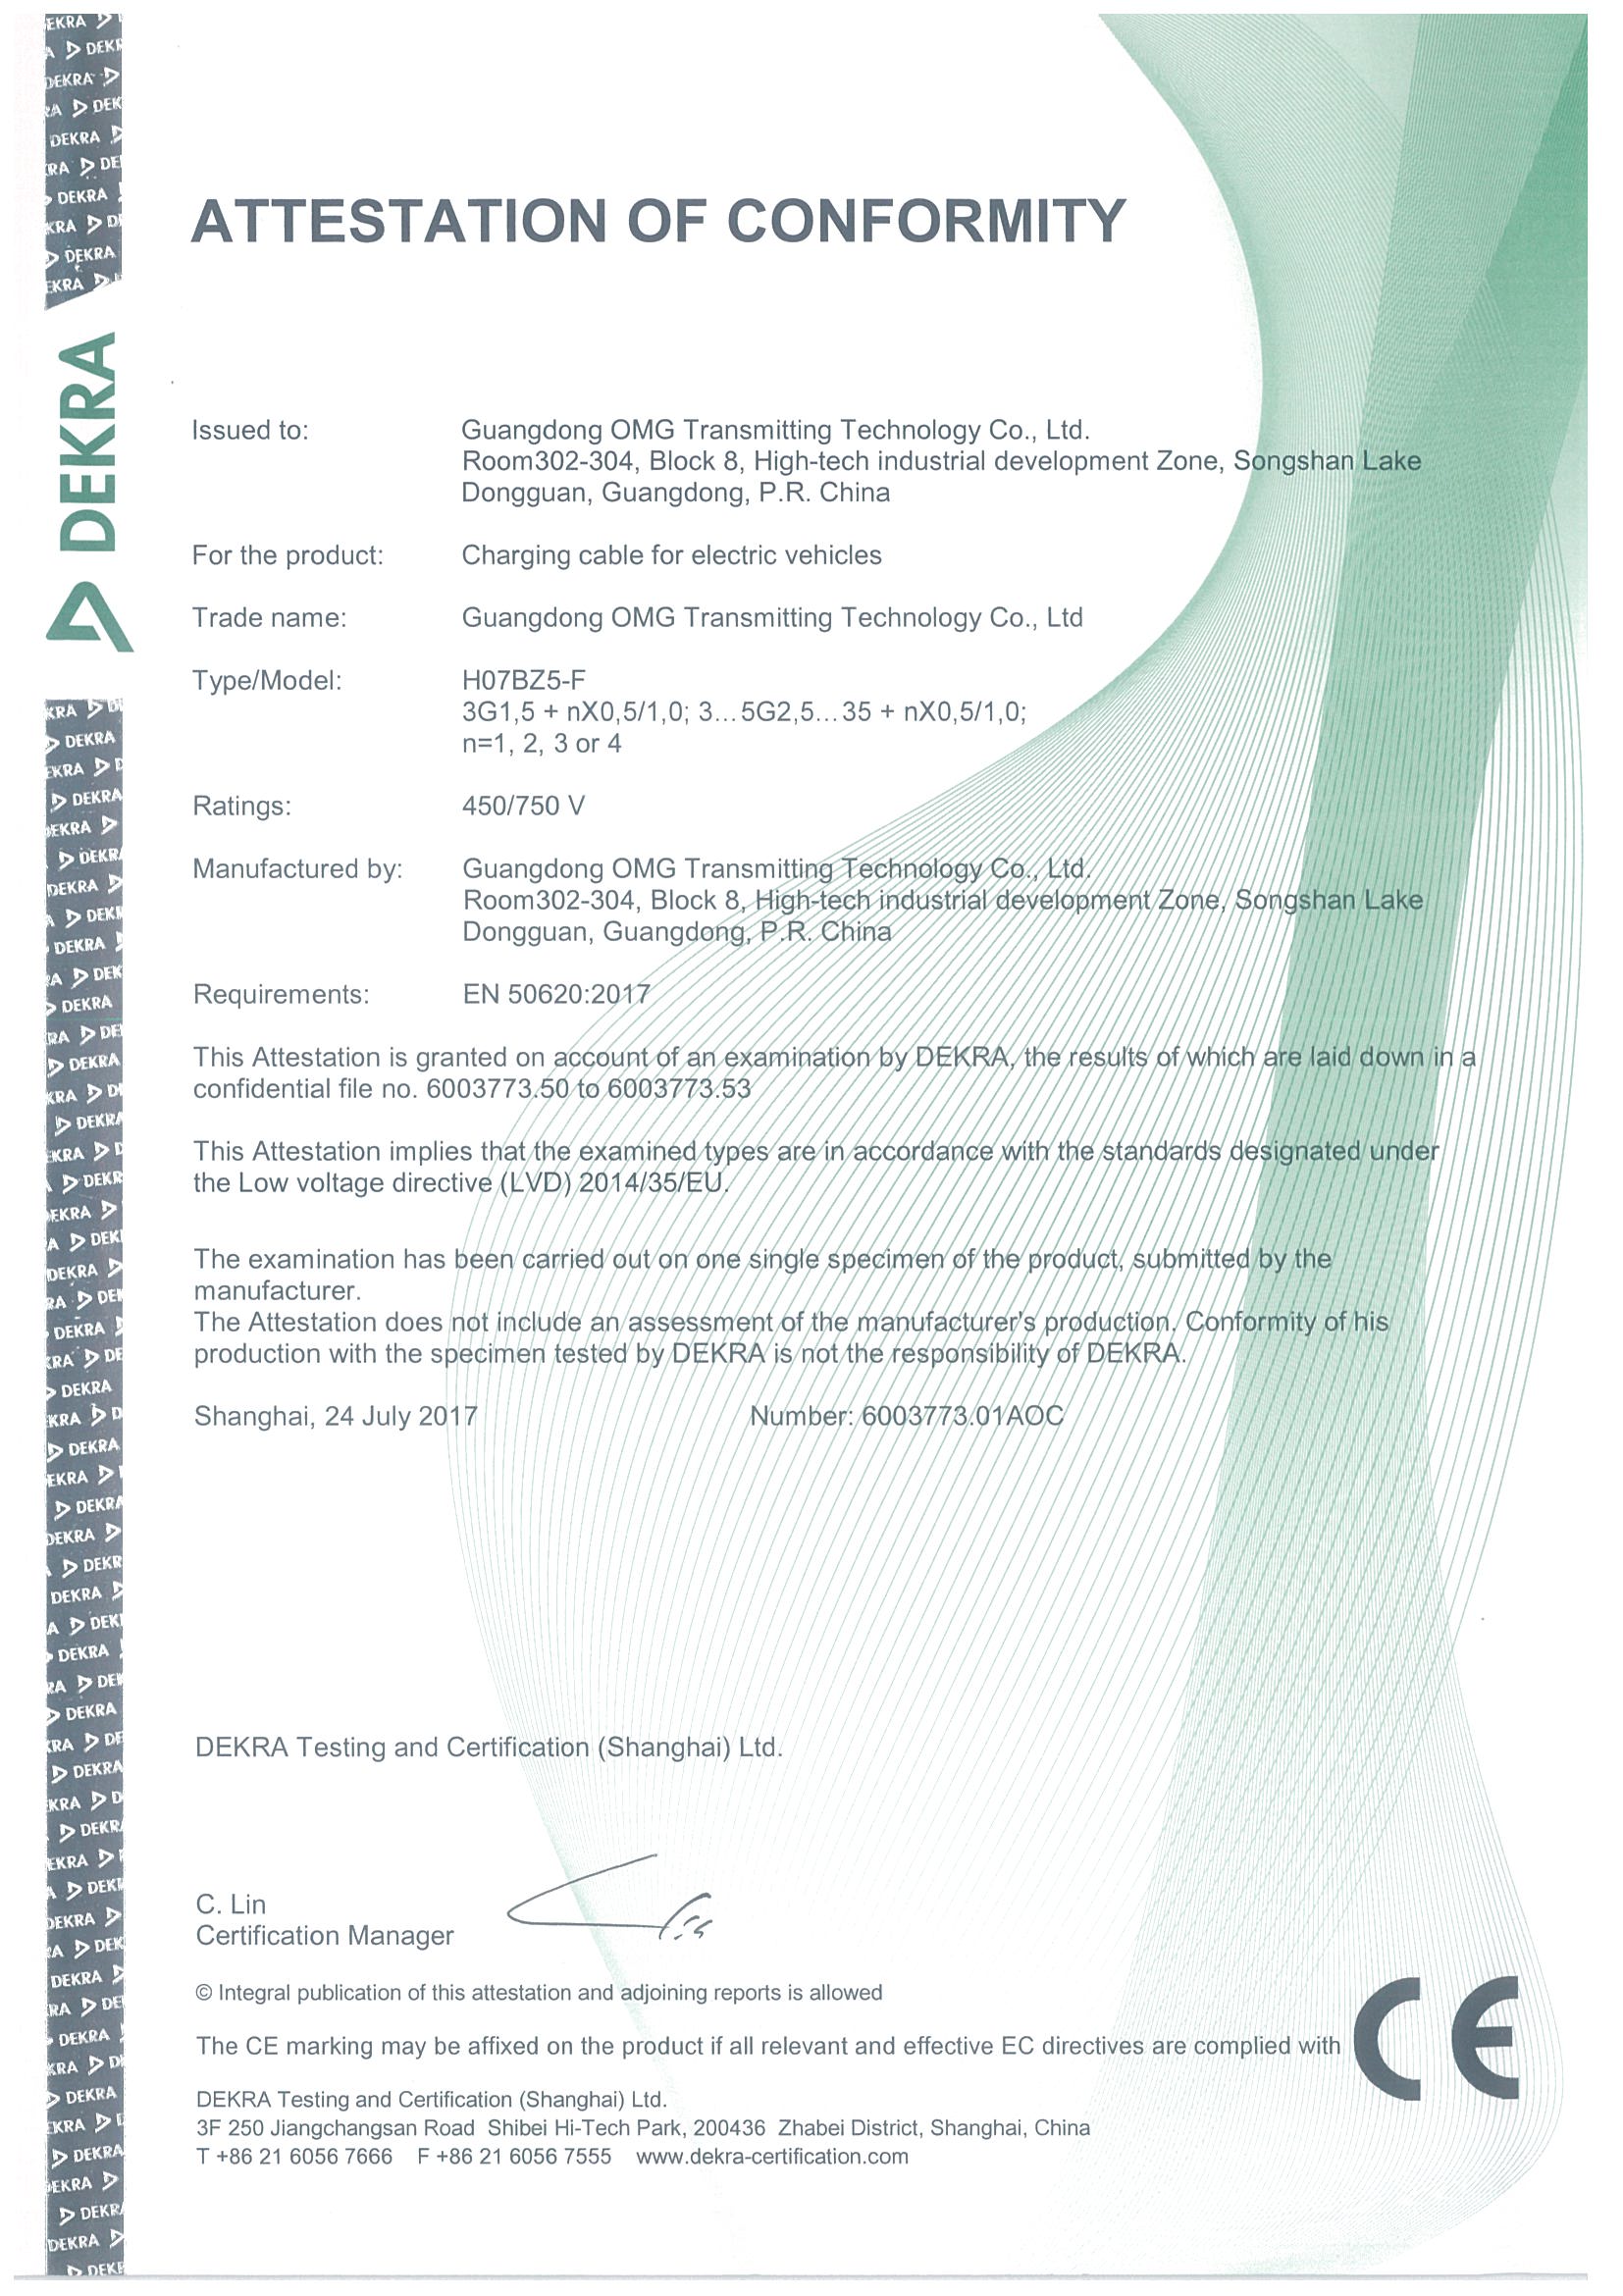 【安全技术】奥美格电动汽车电缆通过EN50620：2017标准认证